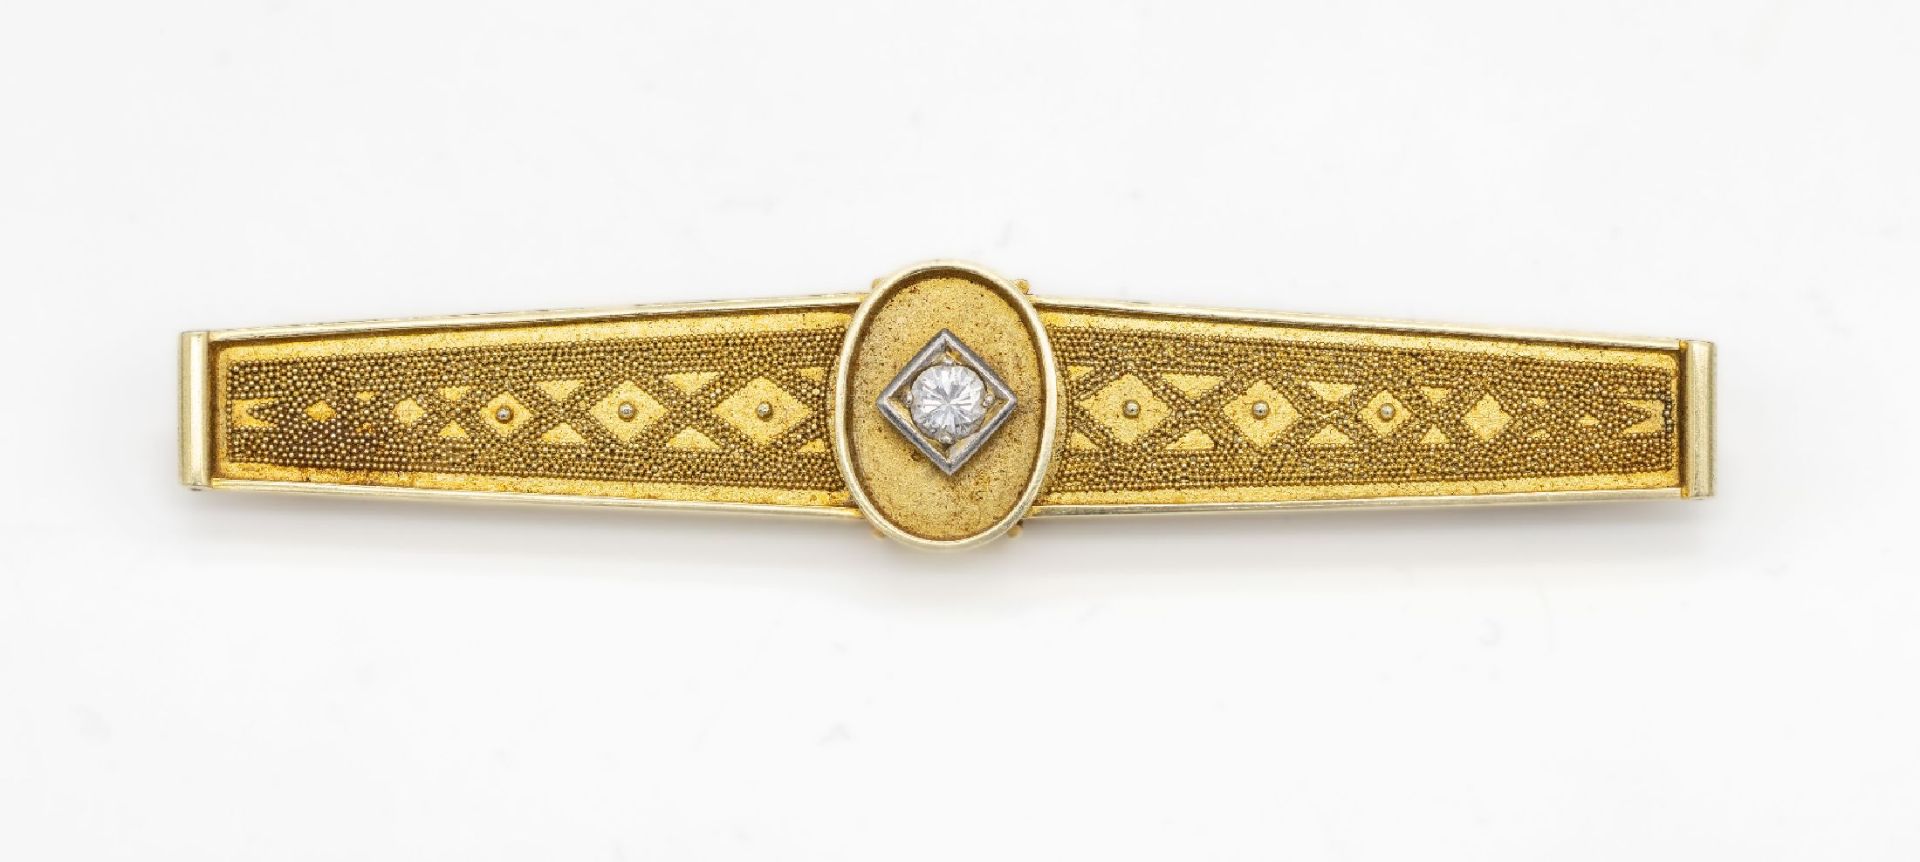 14 kt Gold Diamant-Brosche,   GG/WG 585/000, 1950er Jahre,